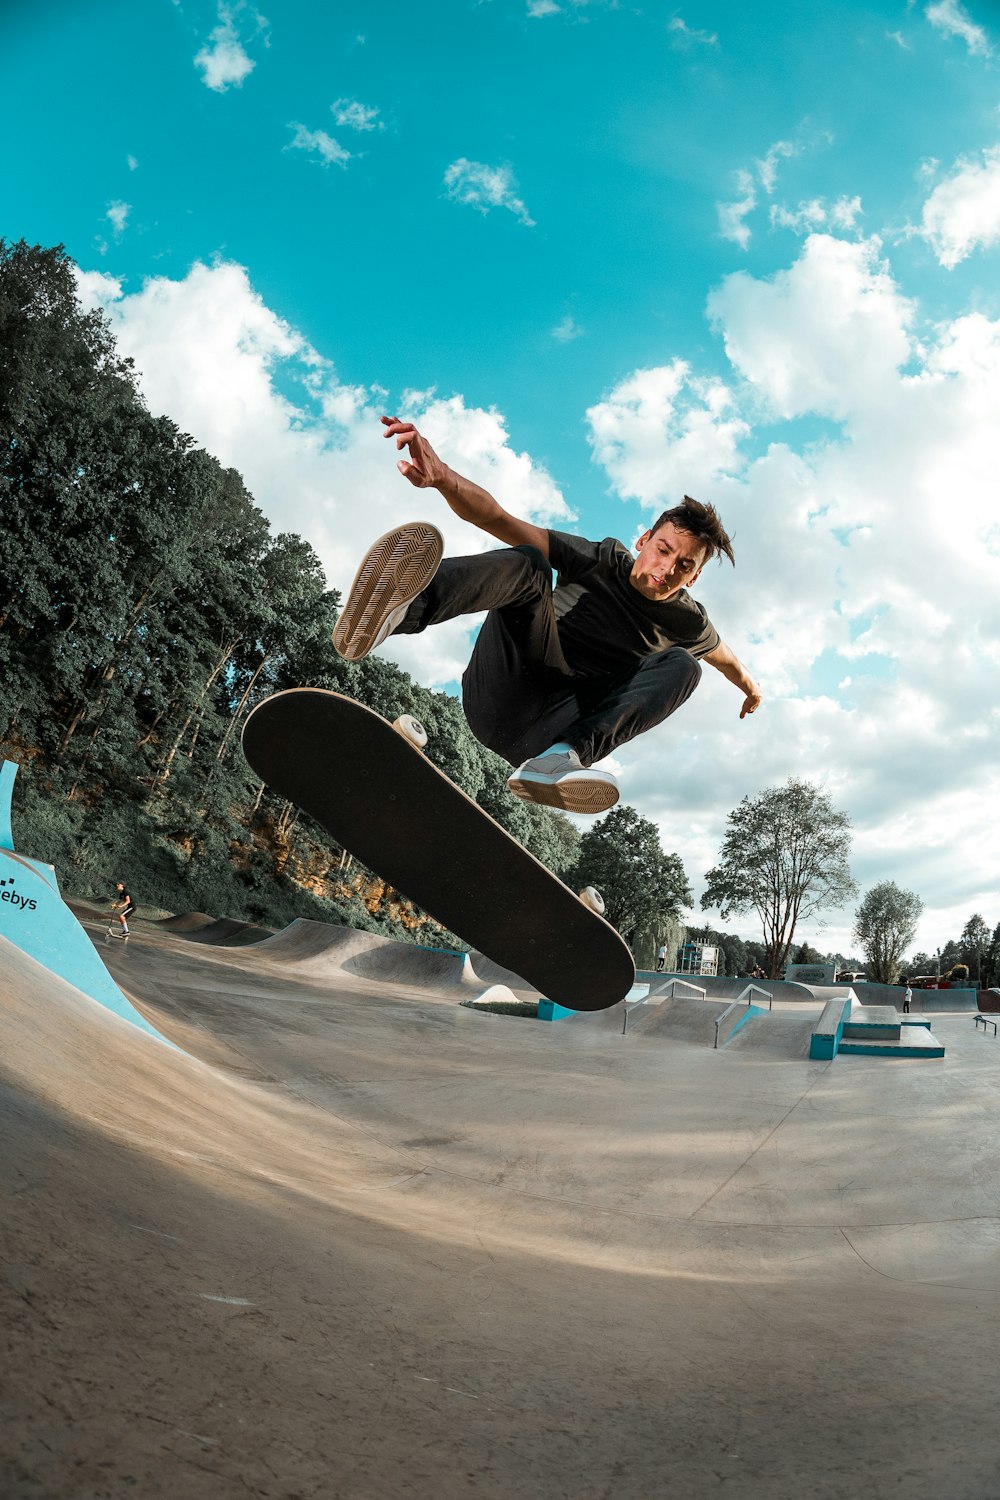 100+ Skateboarding Pictures | Download Free Images on Unsplash